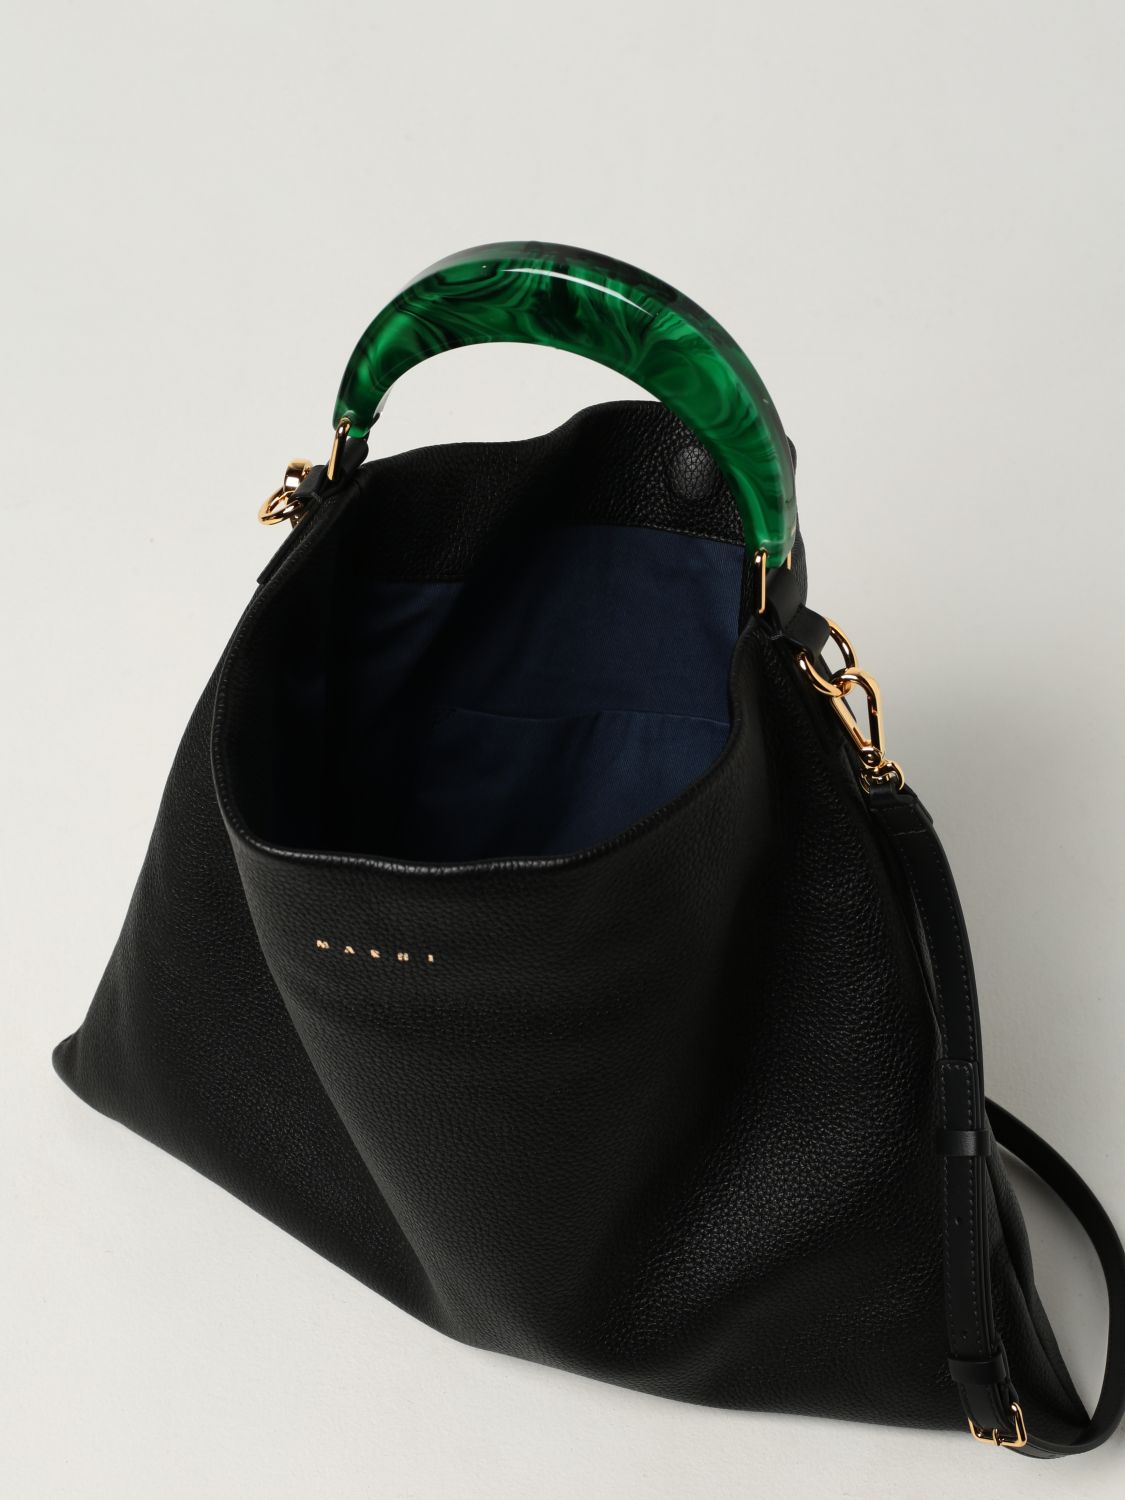 Black Marni bag 🖤 @leiasfez  Street style bags, Marni bag, Black bag  outfit